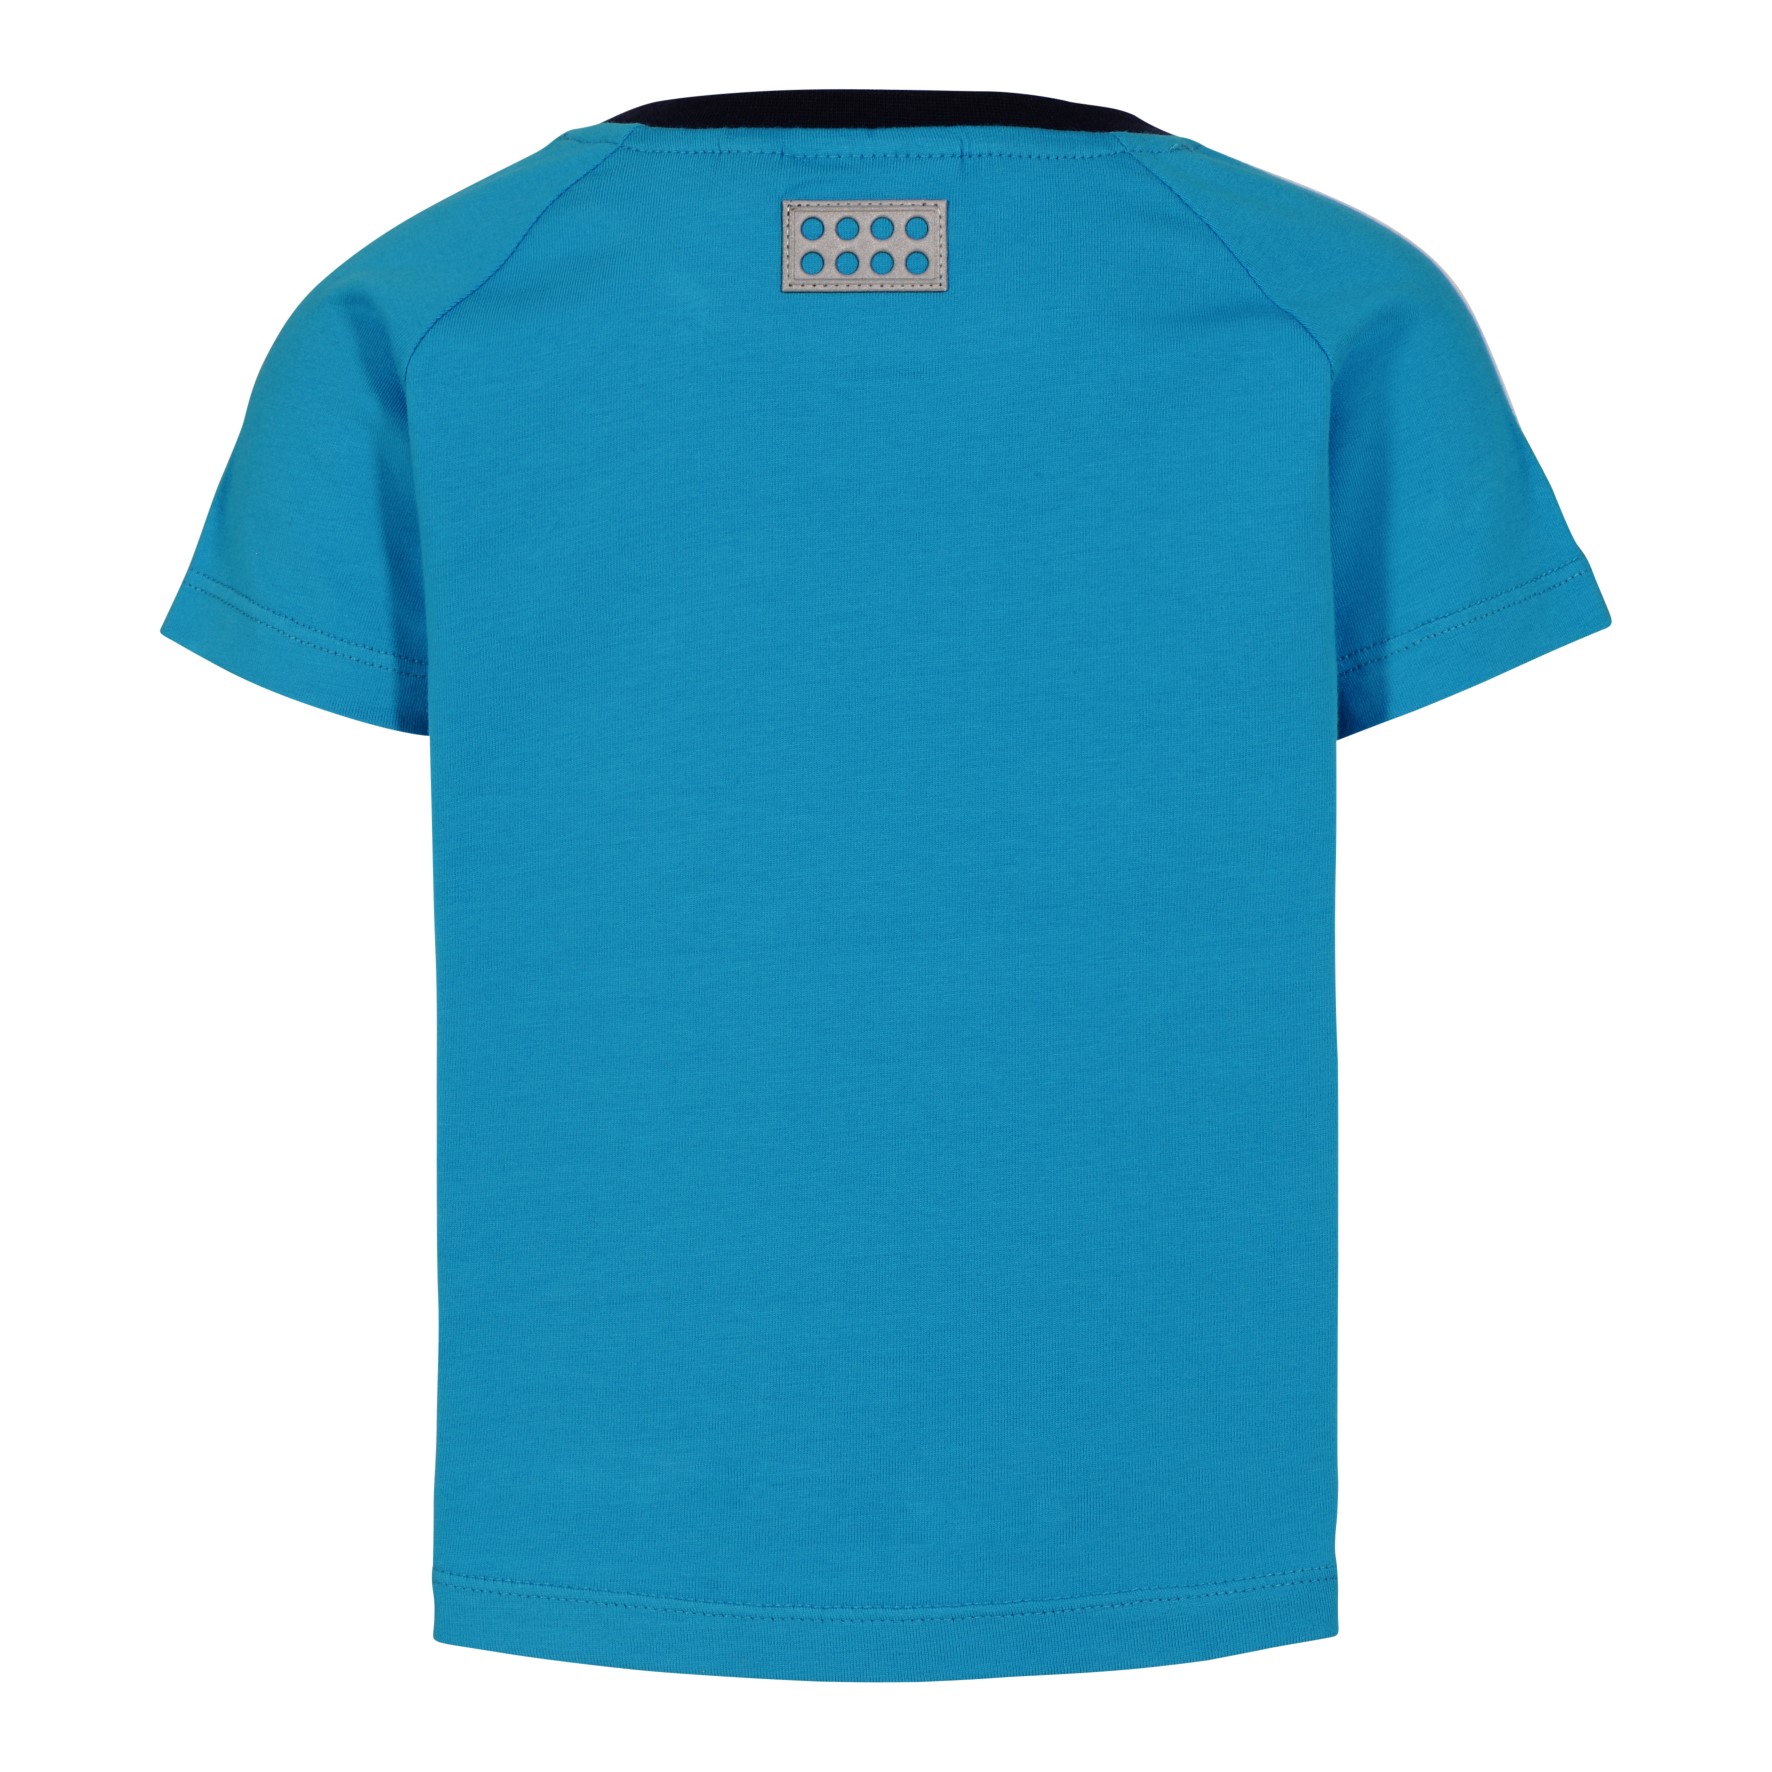 Lego Wear Duplo t-shirt lichtblauw